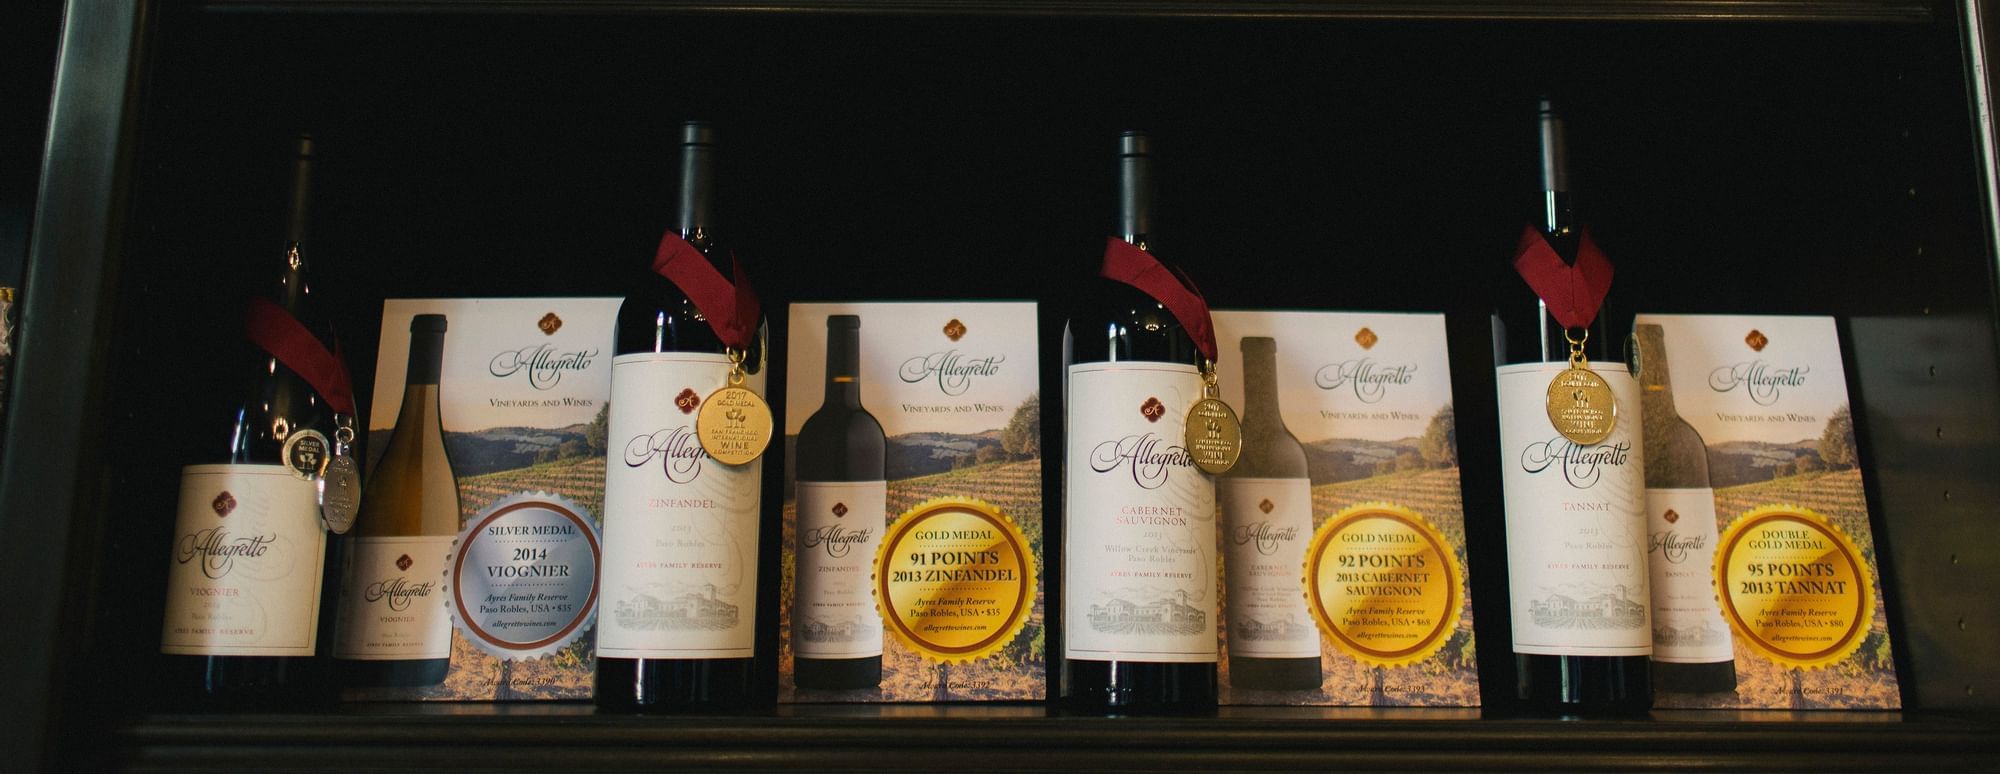 Allegretto wine bottles lined up on shelves